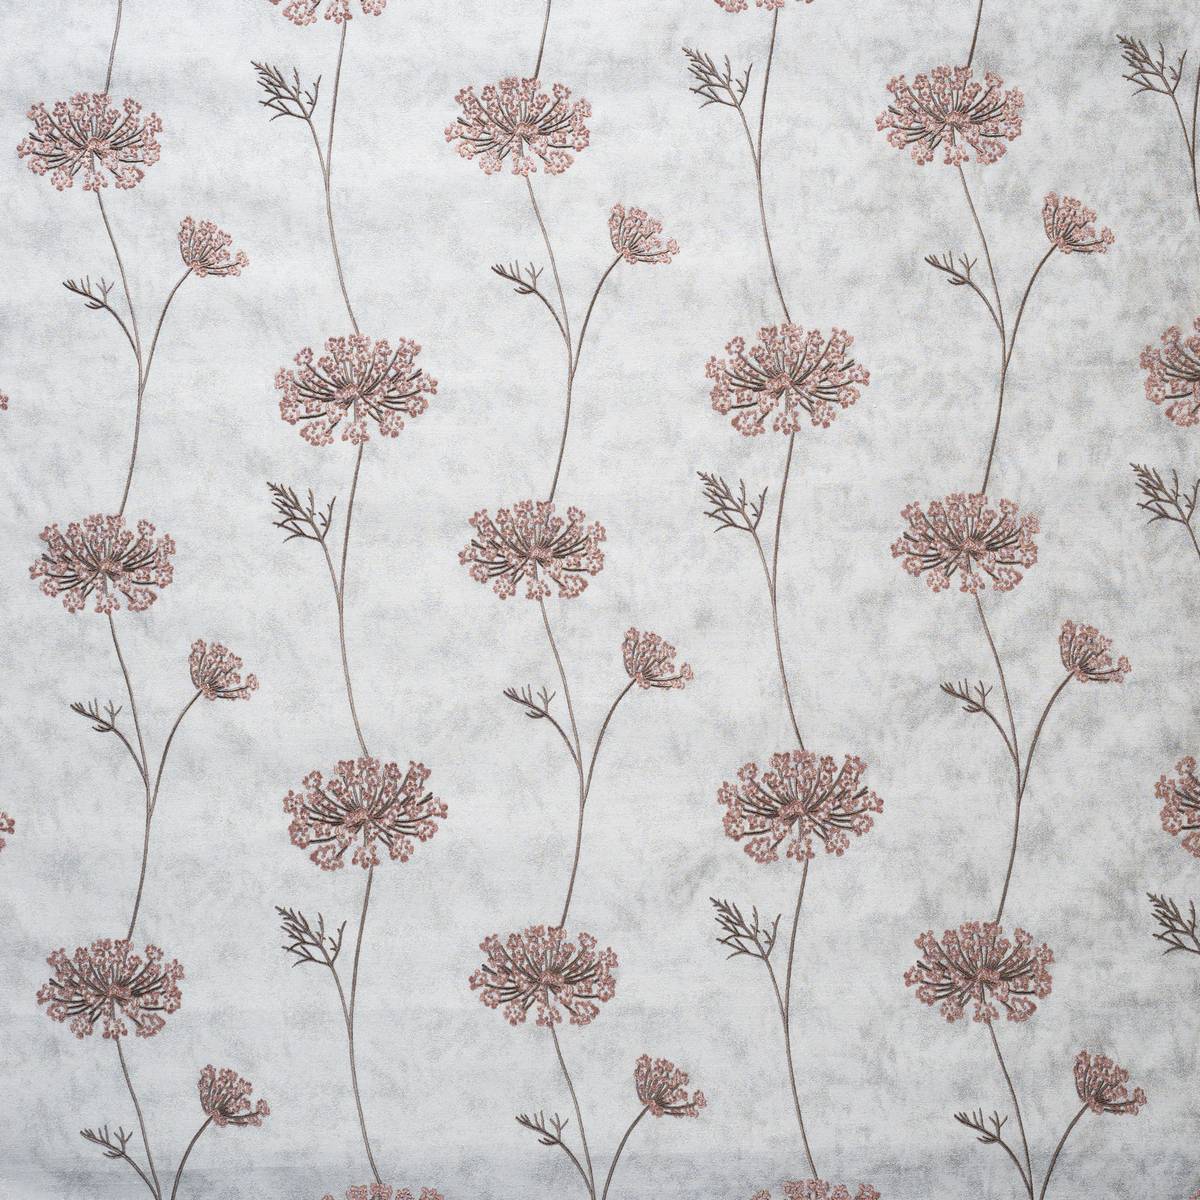 Nedla Shell Fabric by Ashley Wilde